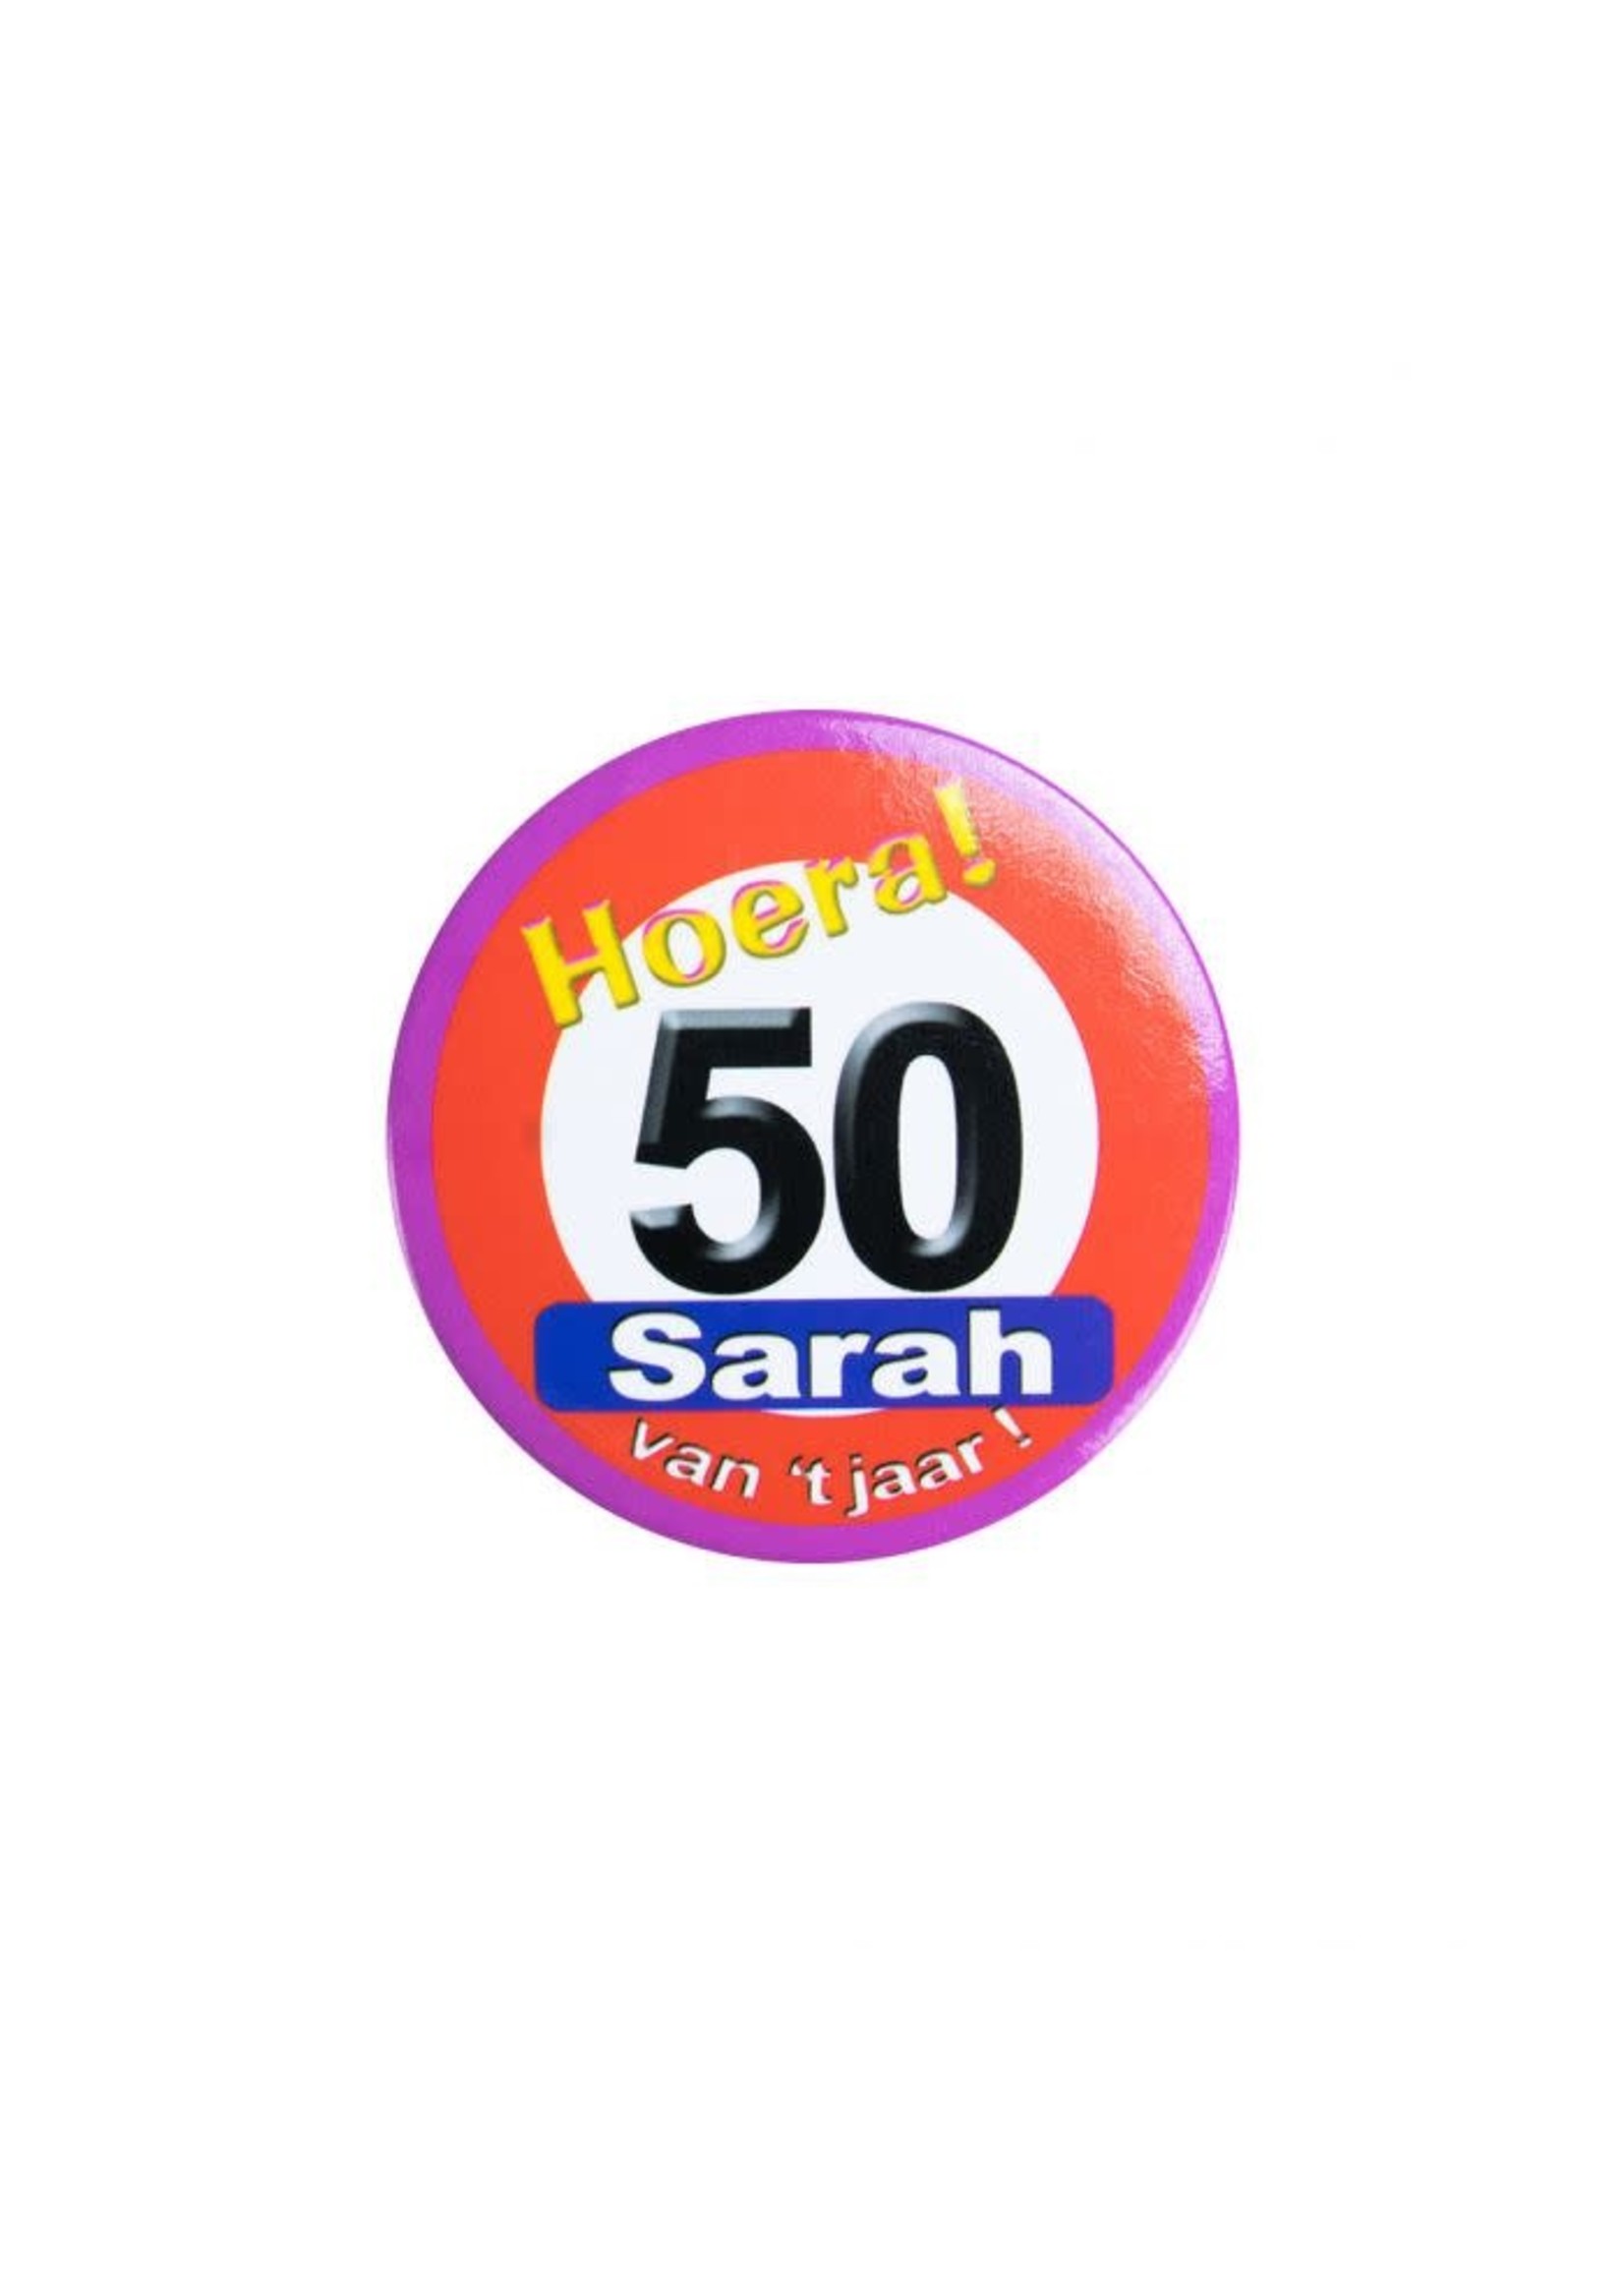 Sarah van t jaar button